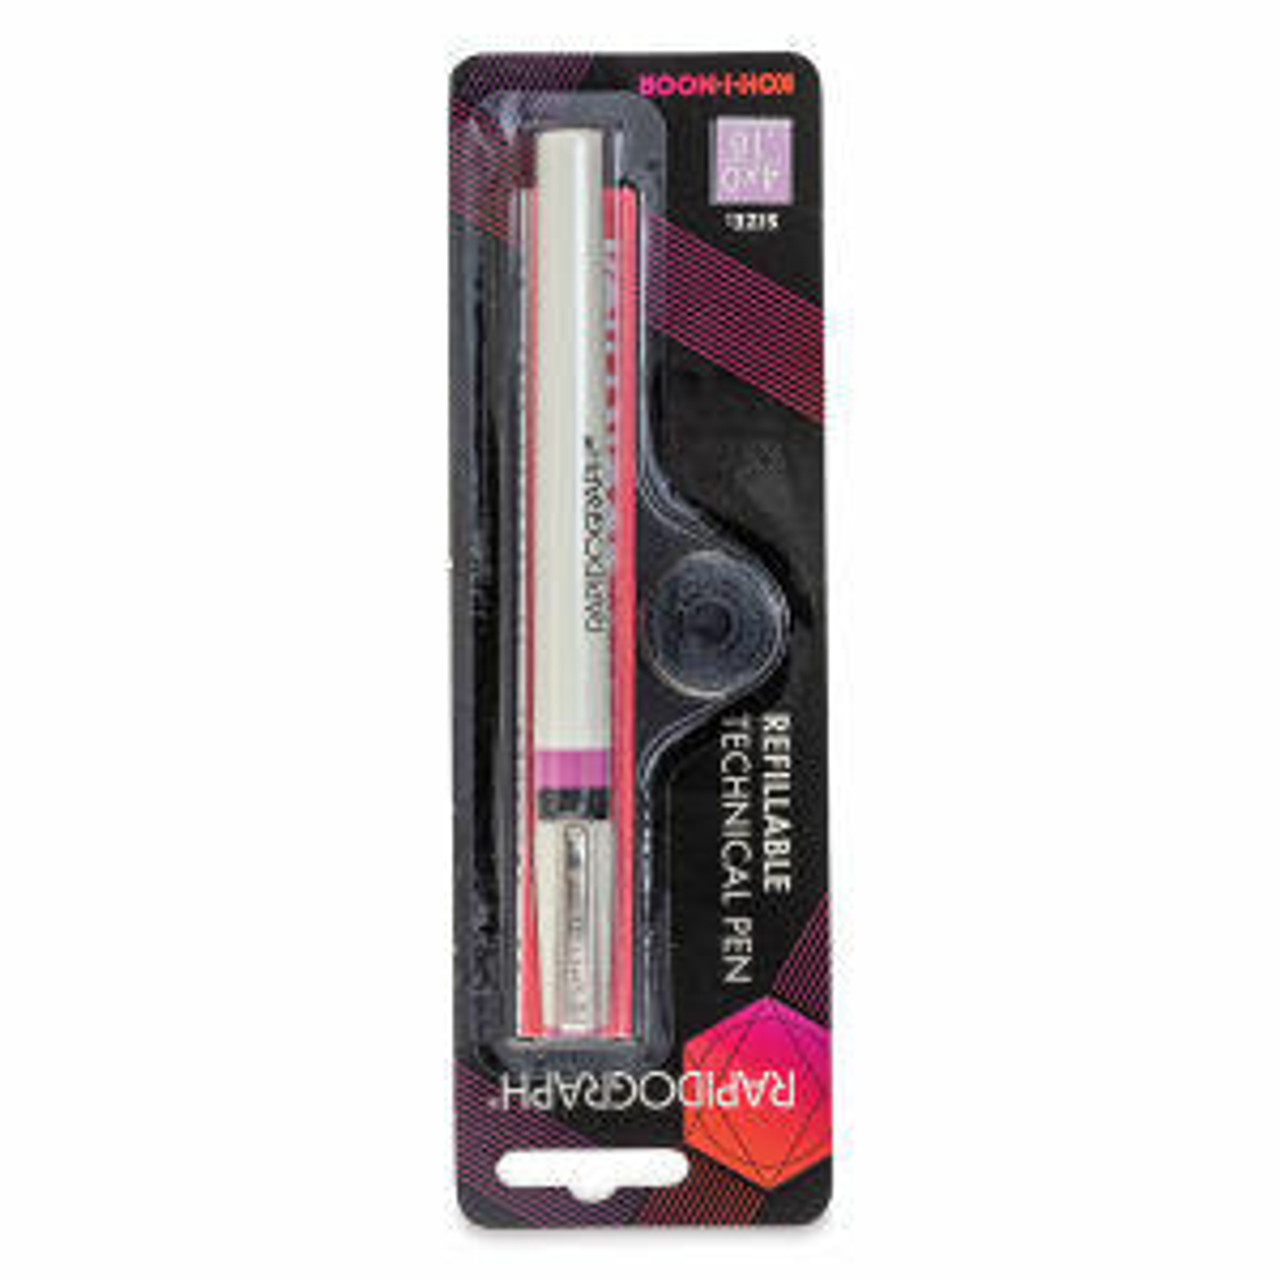 KOH-I-NOOR Rapidograph 3165 - Technical pen - 0.18 mm